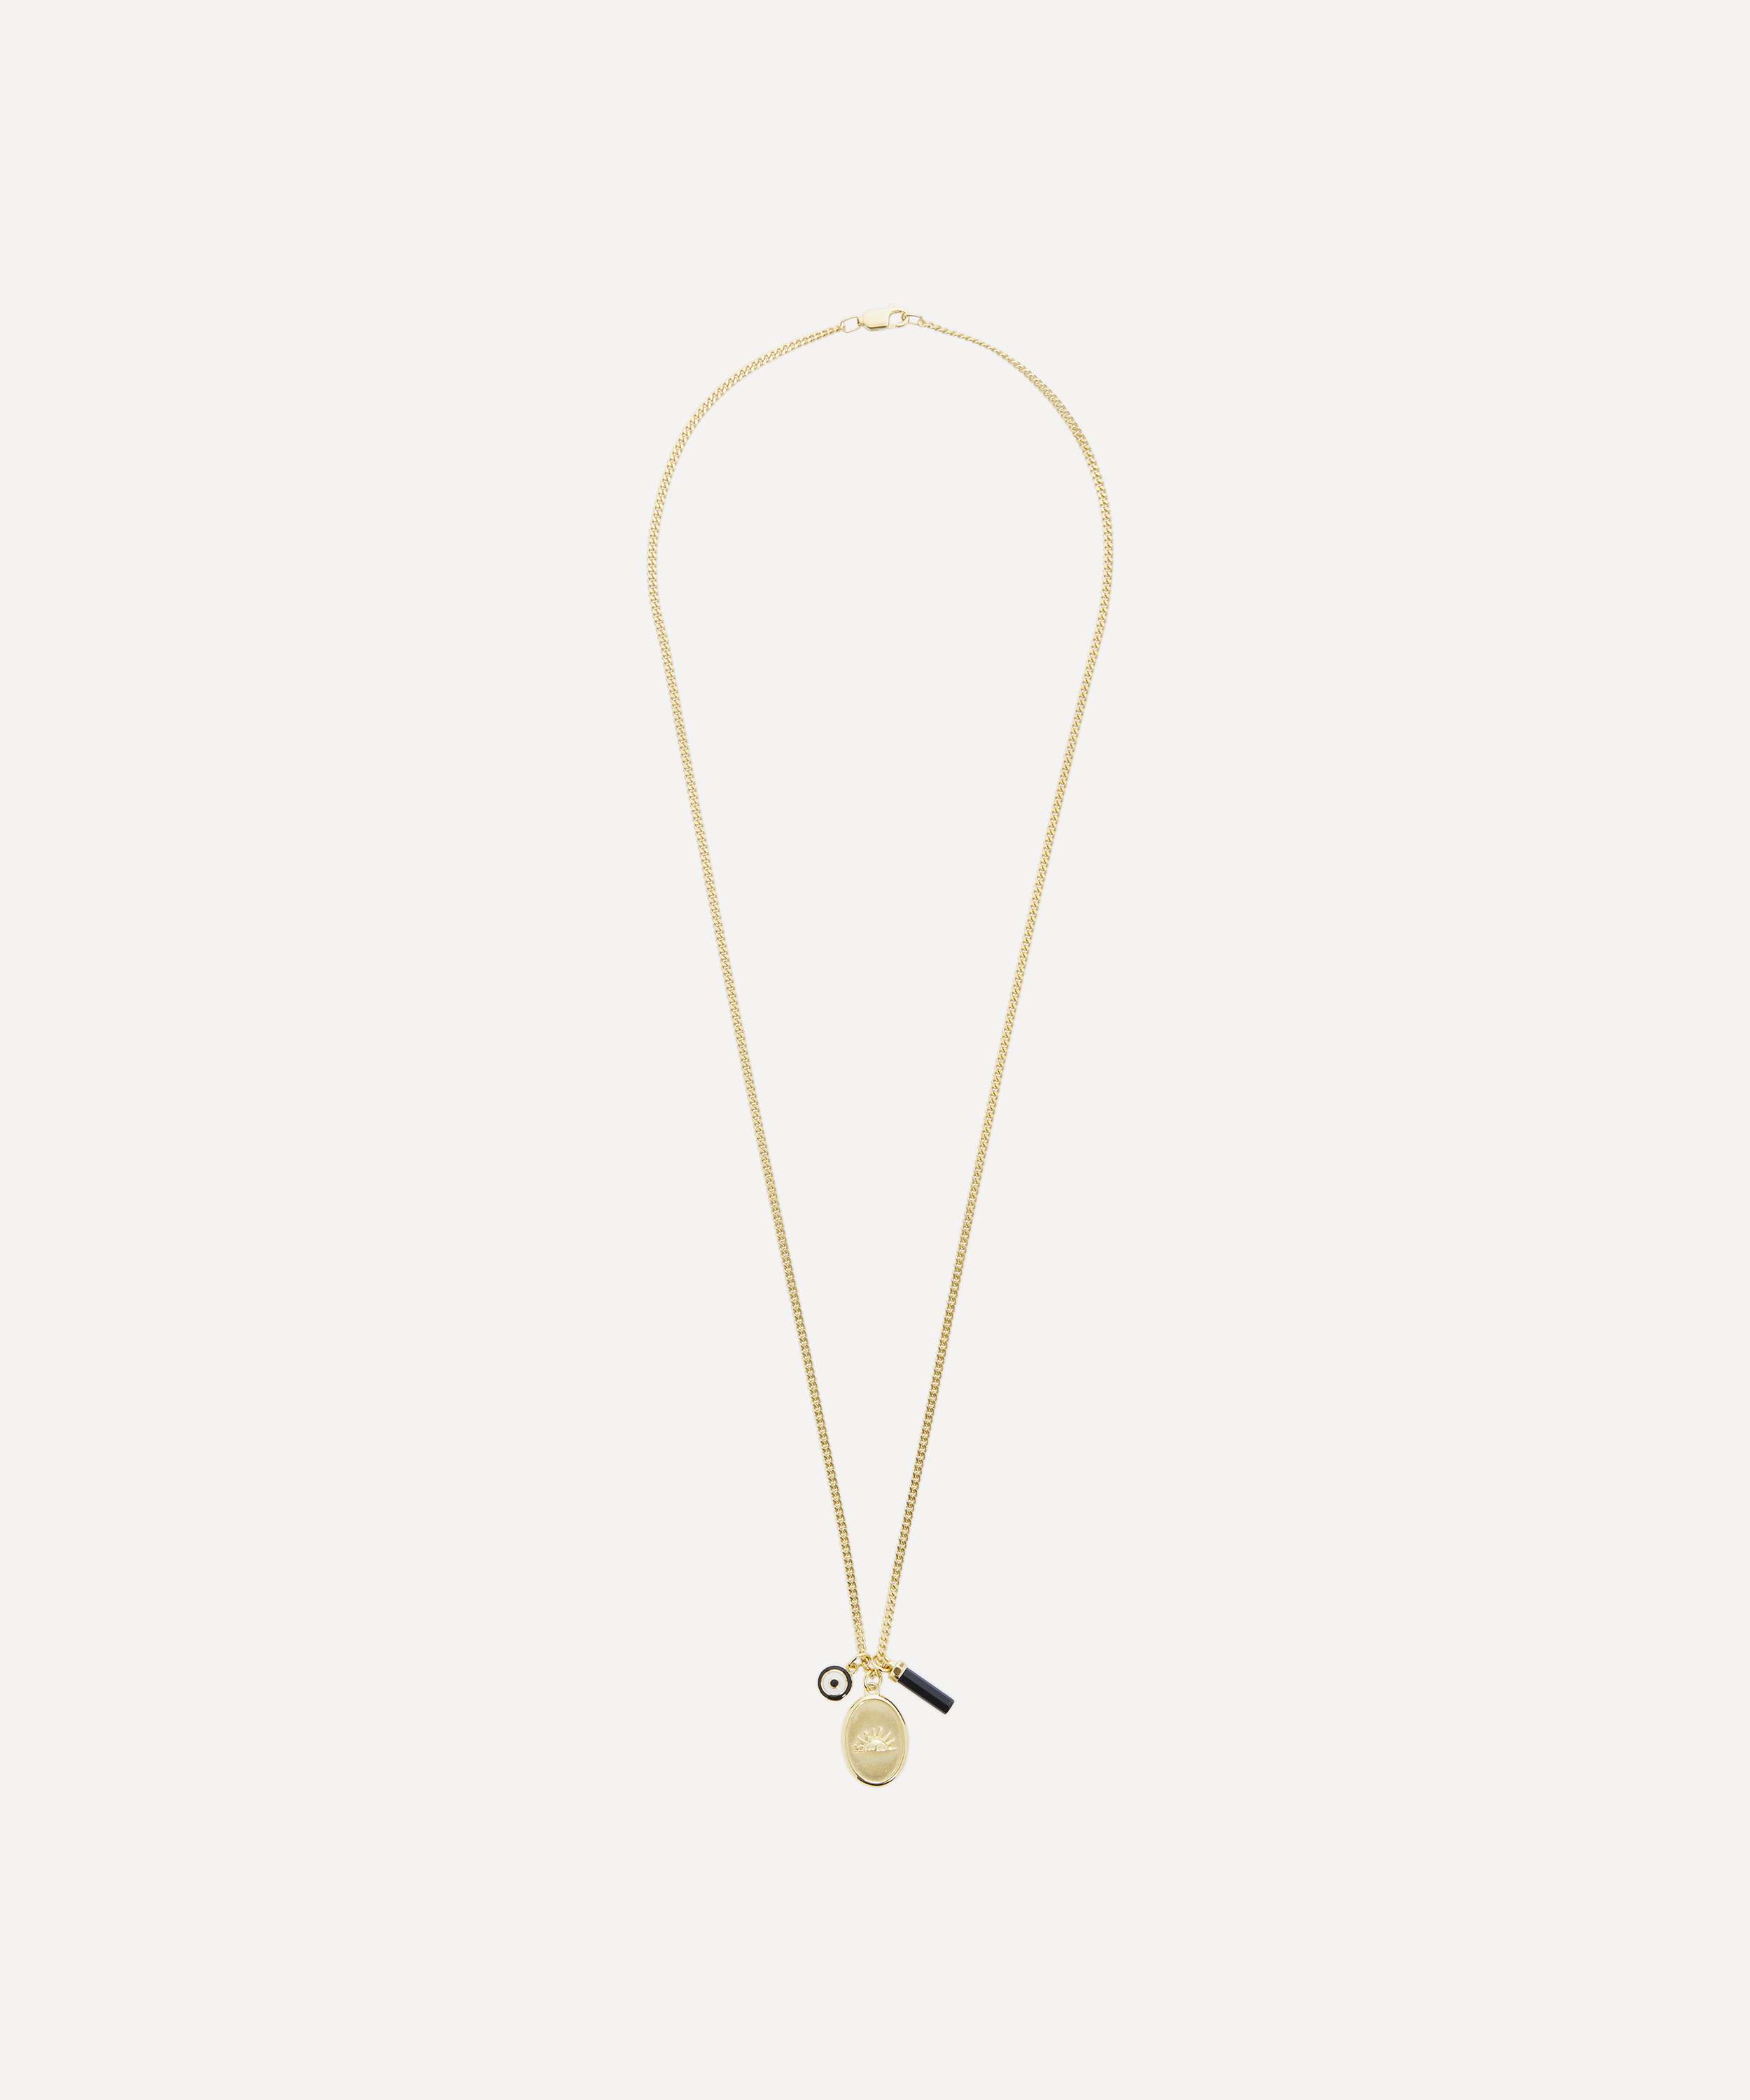 Miansai Men's Lineage Quartz Necklace, Gold Vermeil, Size 21 in.